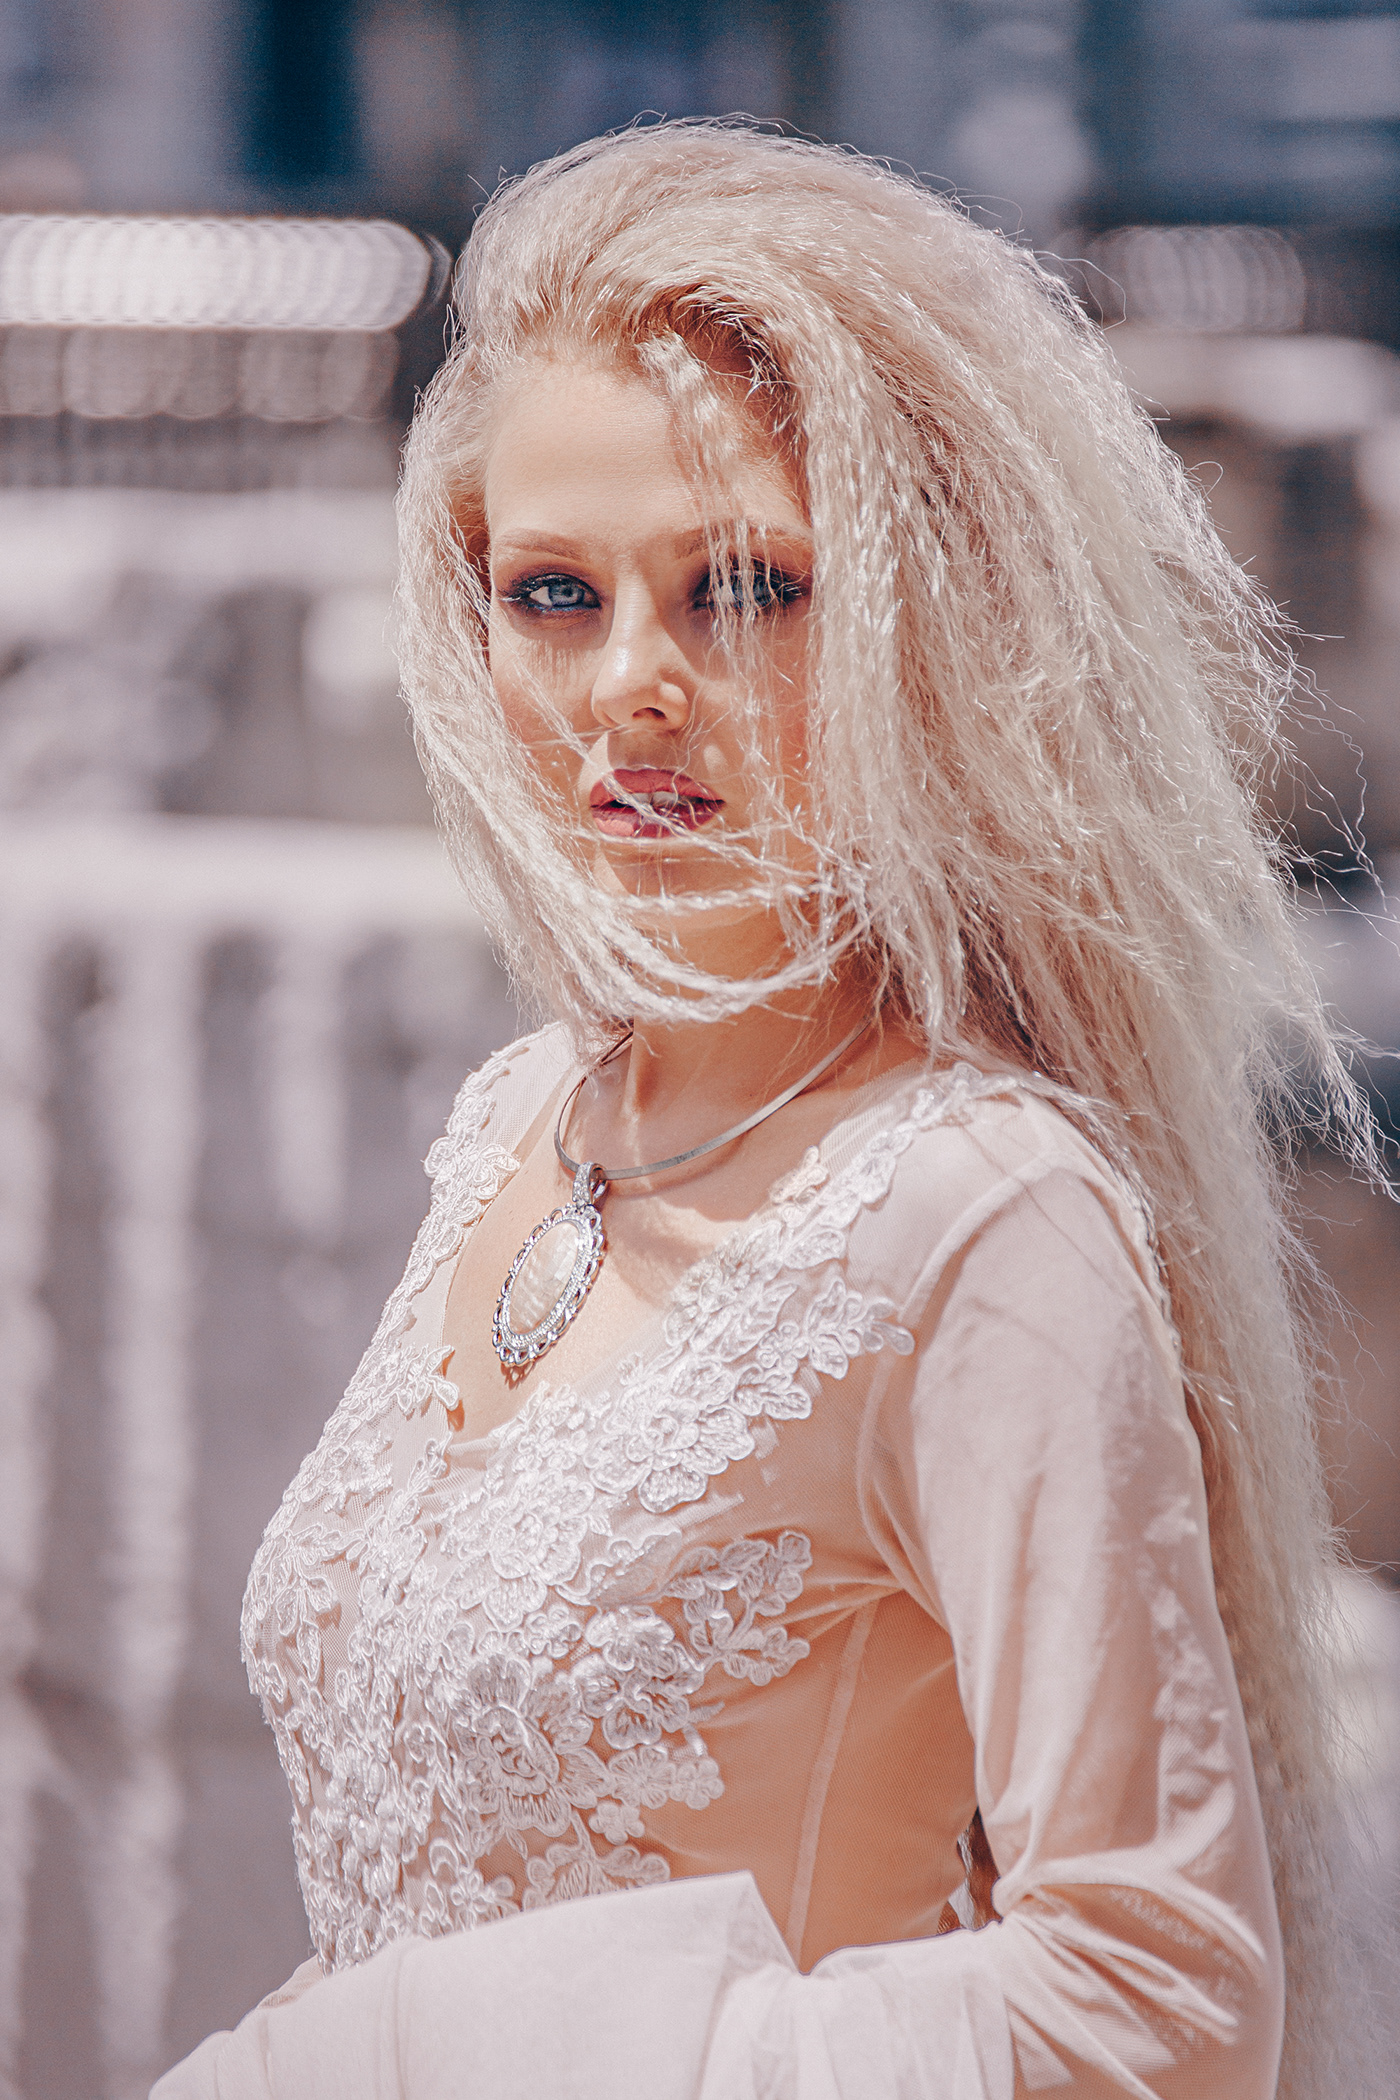 blonde campaign dress Fashion  model Photography  russian Urban valencia vestido